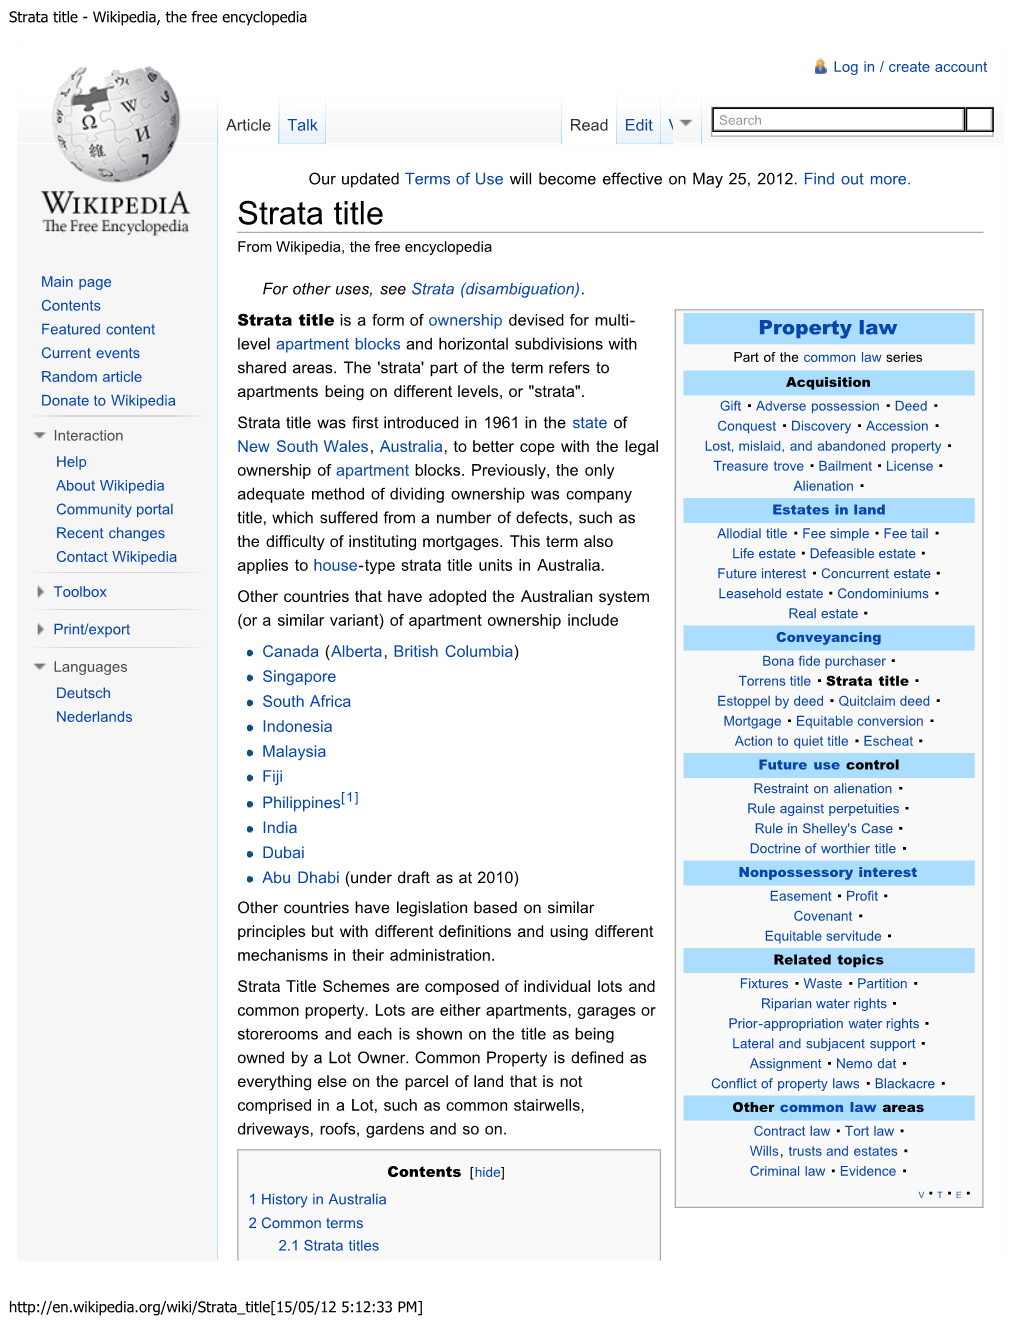 Strata Title - Wikipedia, the Free Encyclopedia